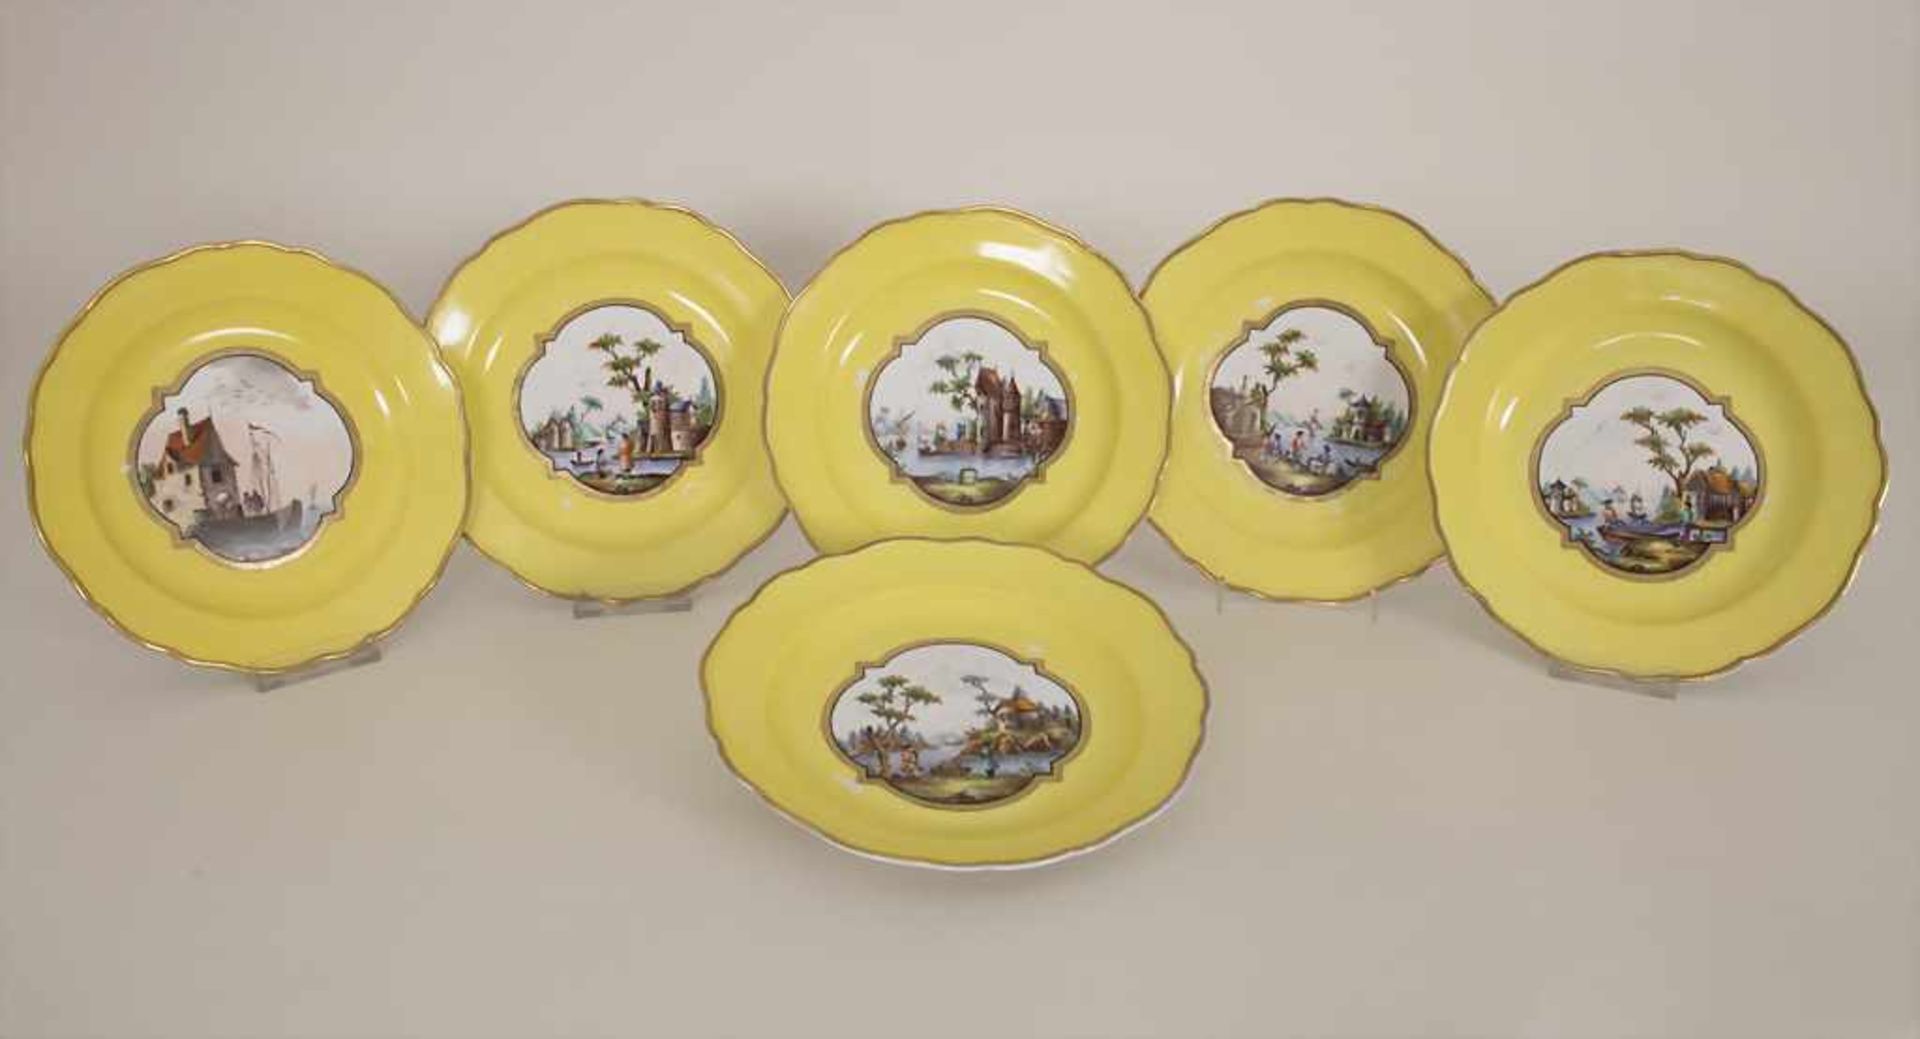 6 Ansichtenteller / 6 plates with harbour scenes, Meissen, um 1850Material: Porzellan, bemalt u.